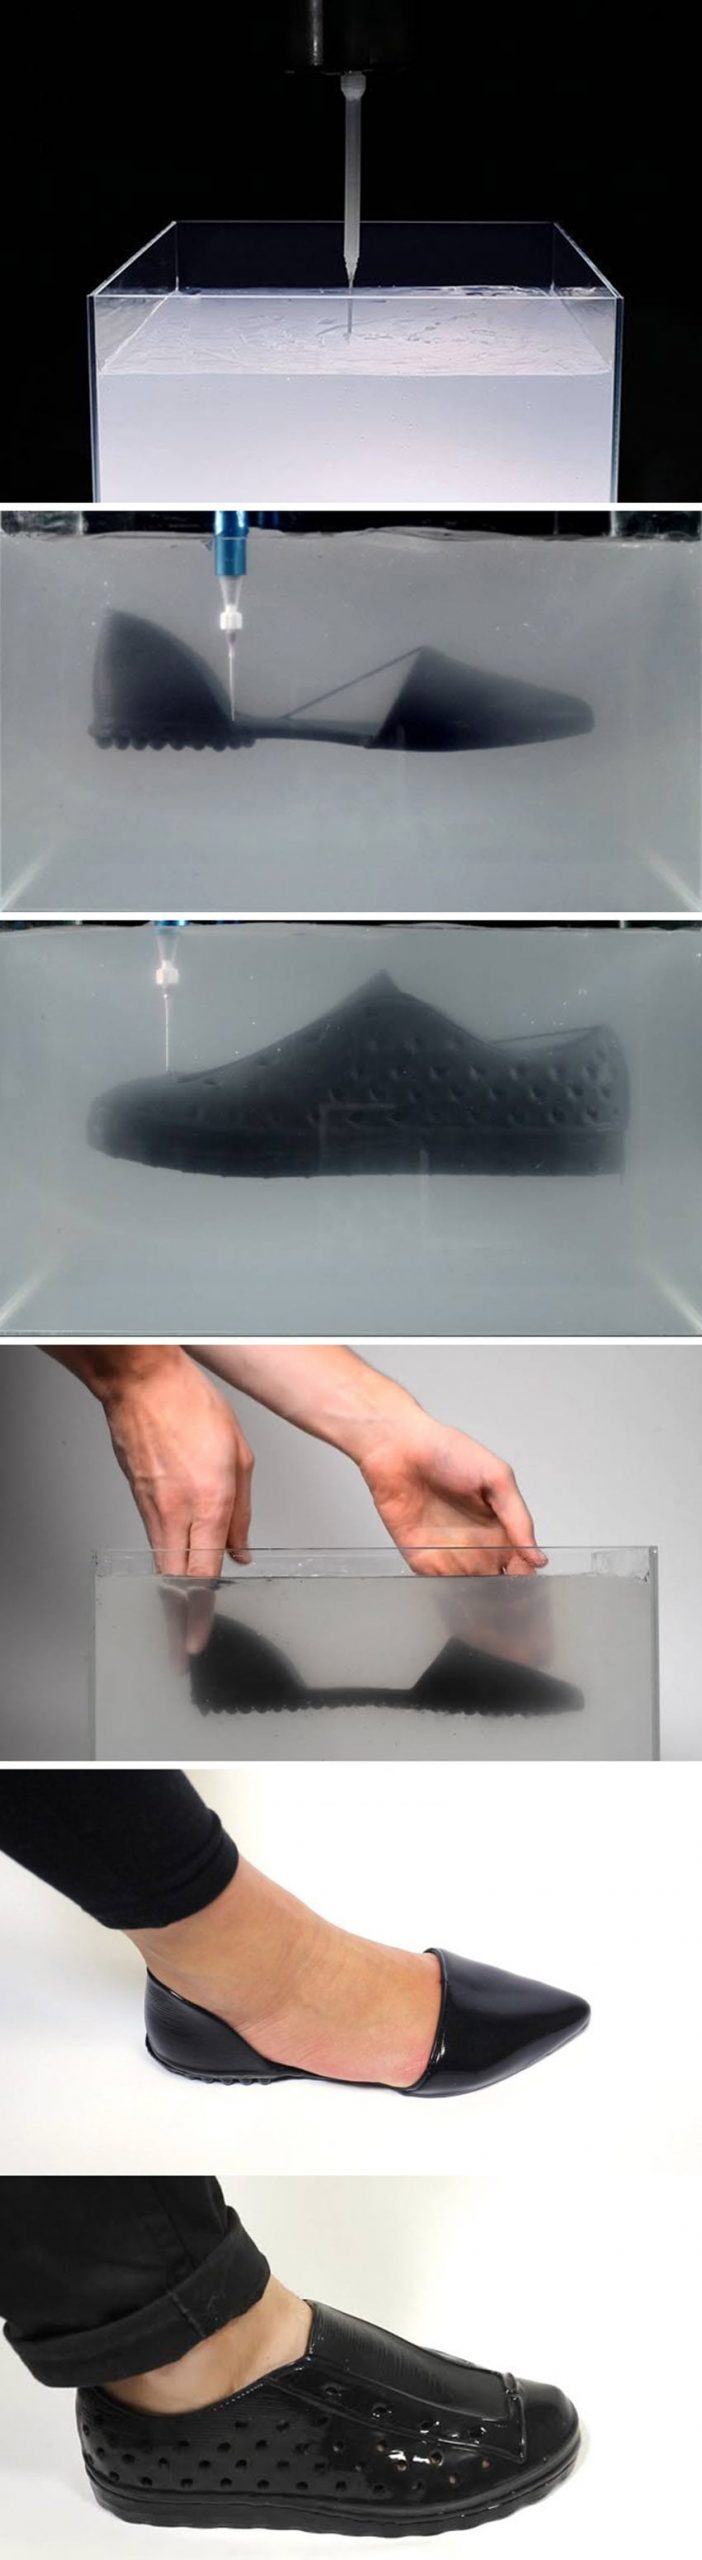 Native Shoes apresenta seus sapatos de borracha líquida impressos em 3D